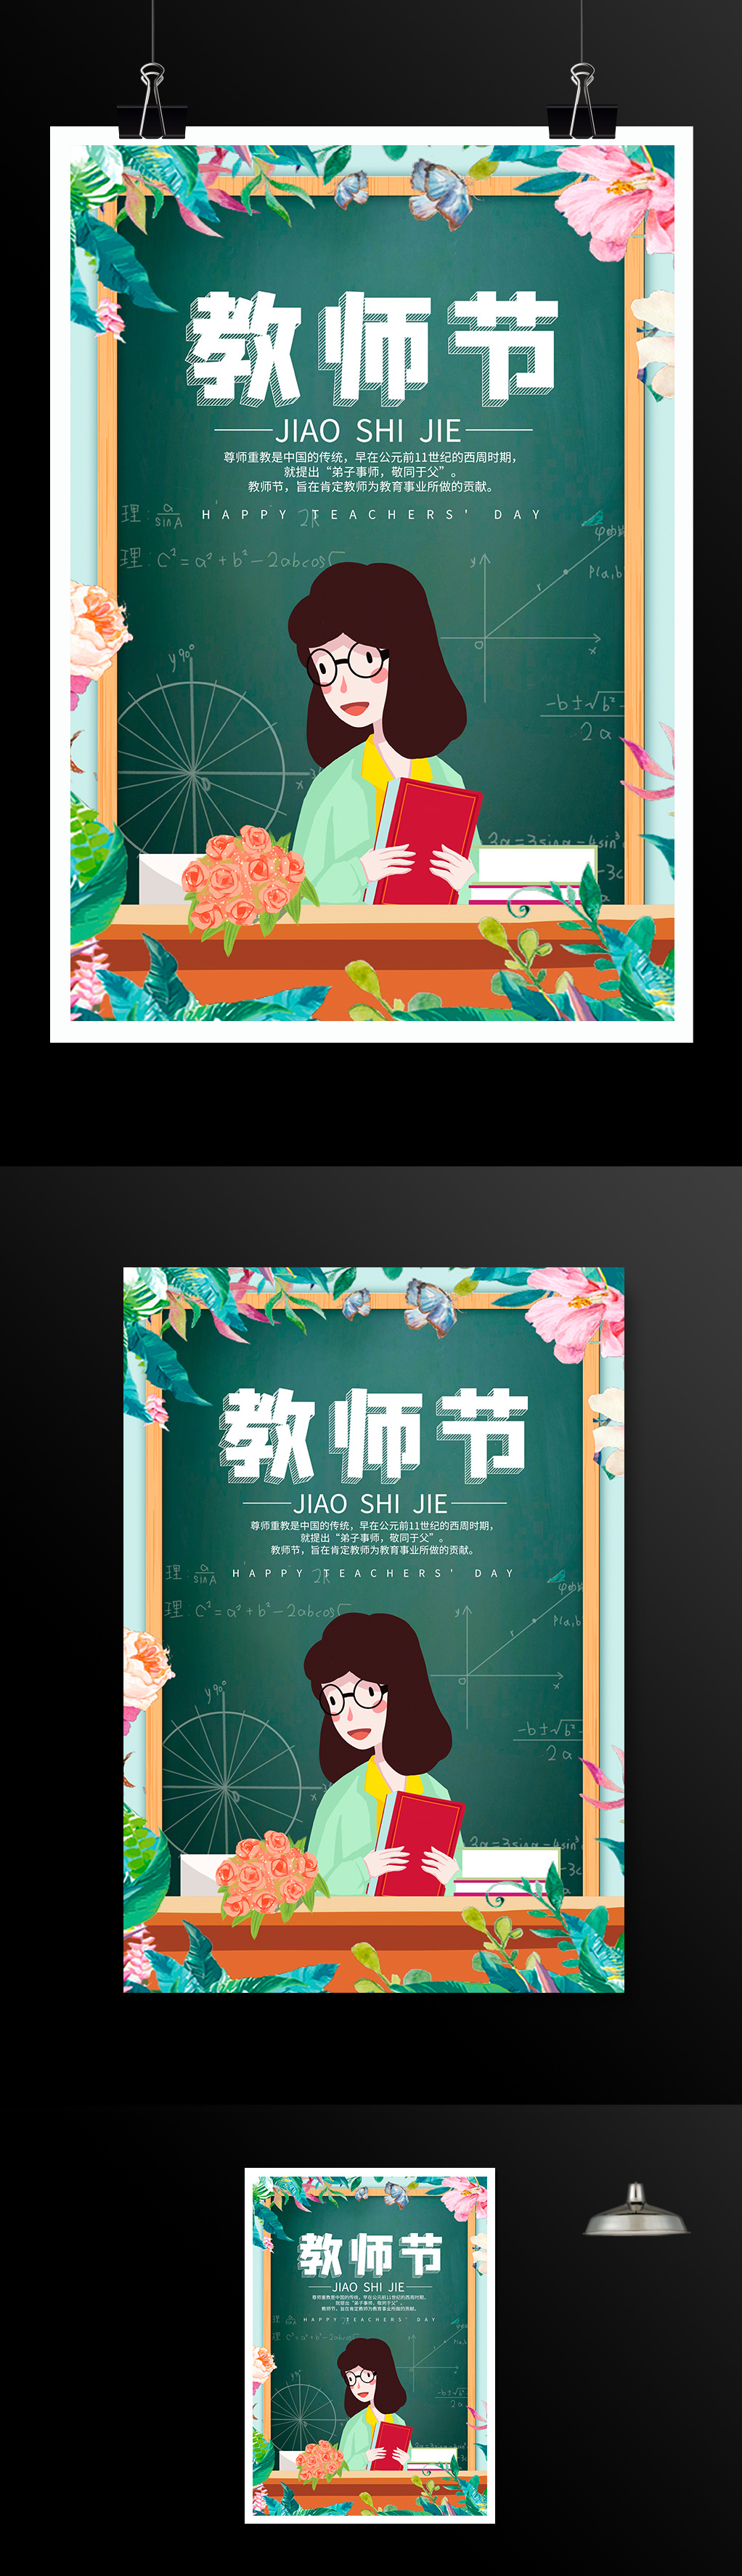 时尚小清新教师节宣传海报设计